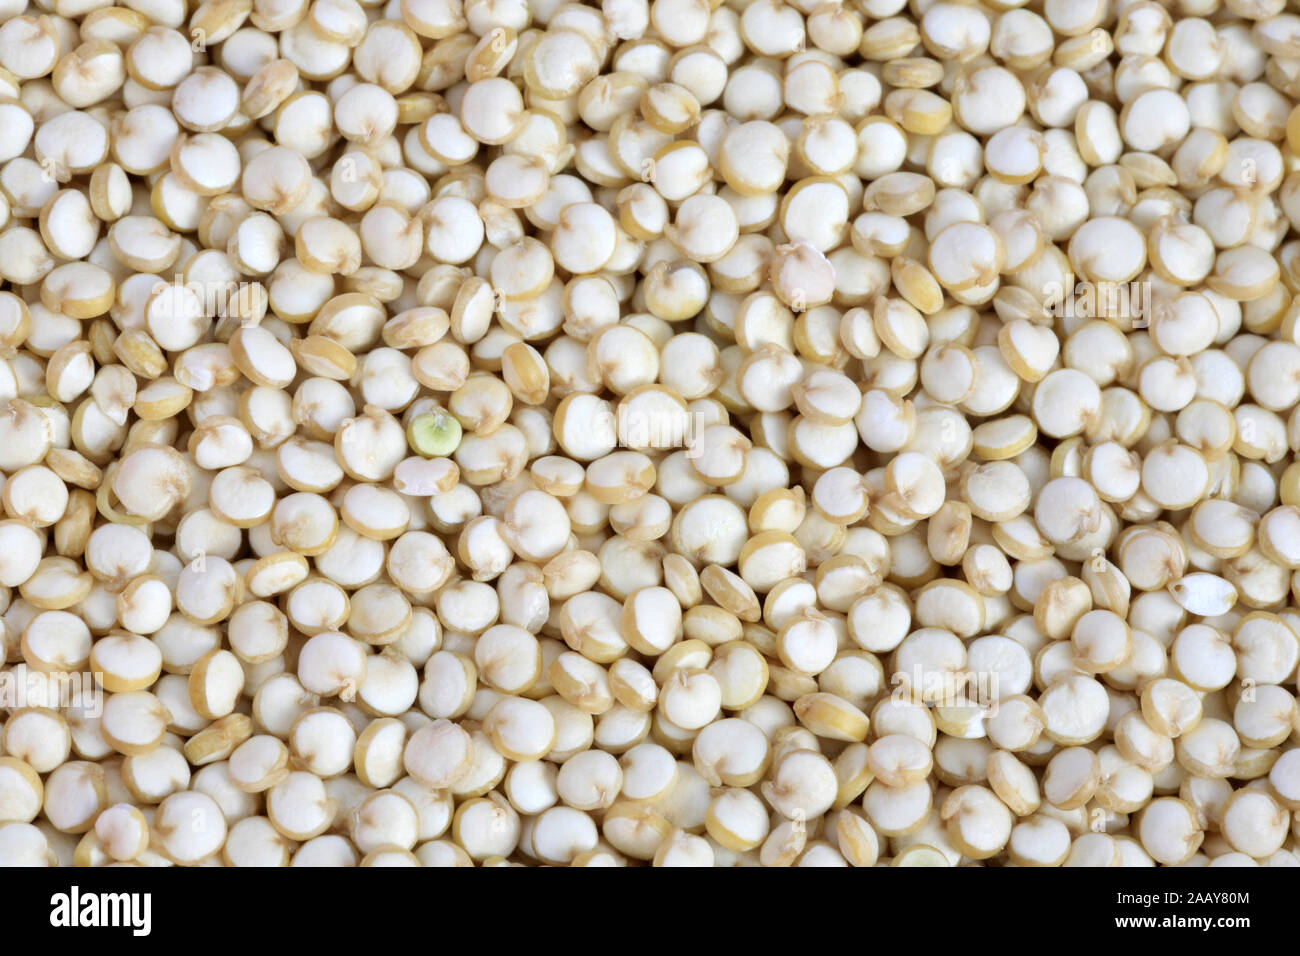 La quinoa, Reismelde, Reis-Melde, Inkakorn, Inka-Korn, Reisspinat, Reis-Spinat, Perureis, Peru-Reis (Chenopodium quinoa), Koerner, Samen | quinoa (Chenop Foto Stock